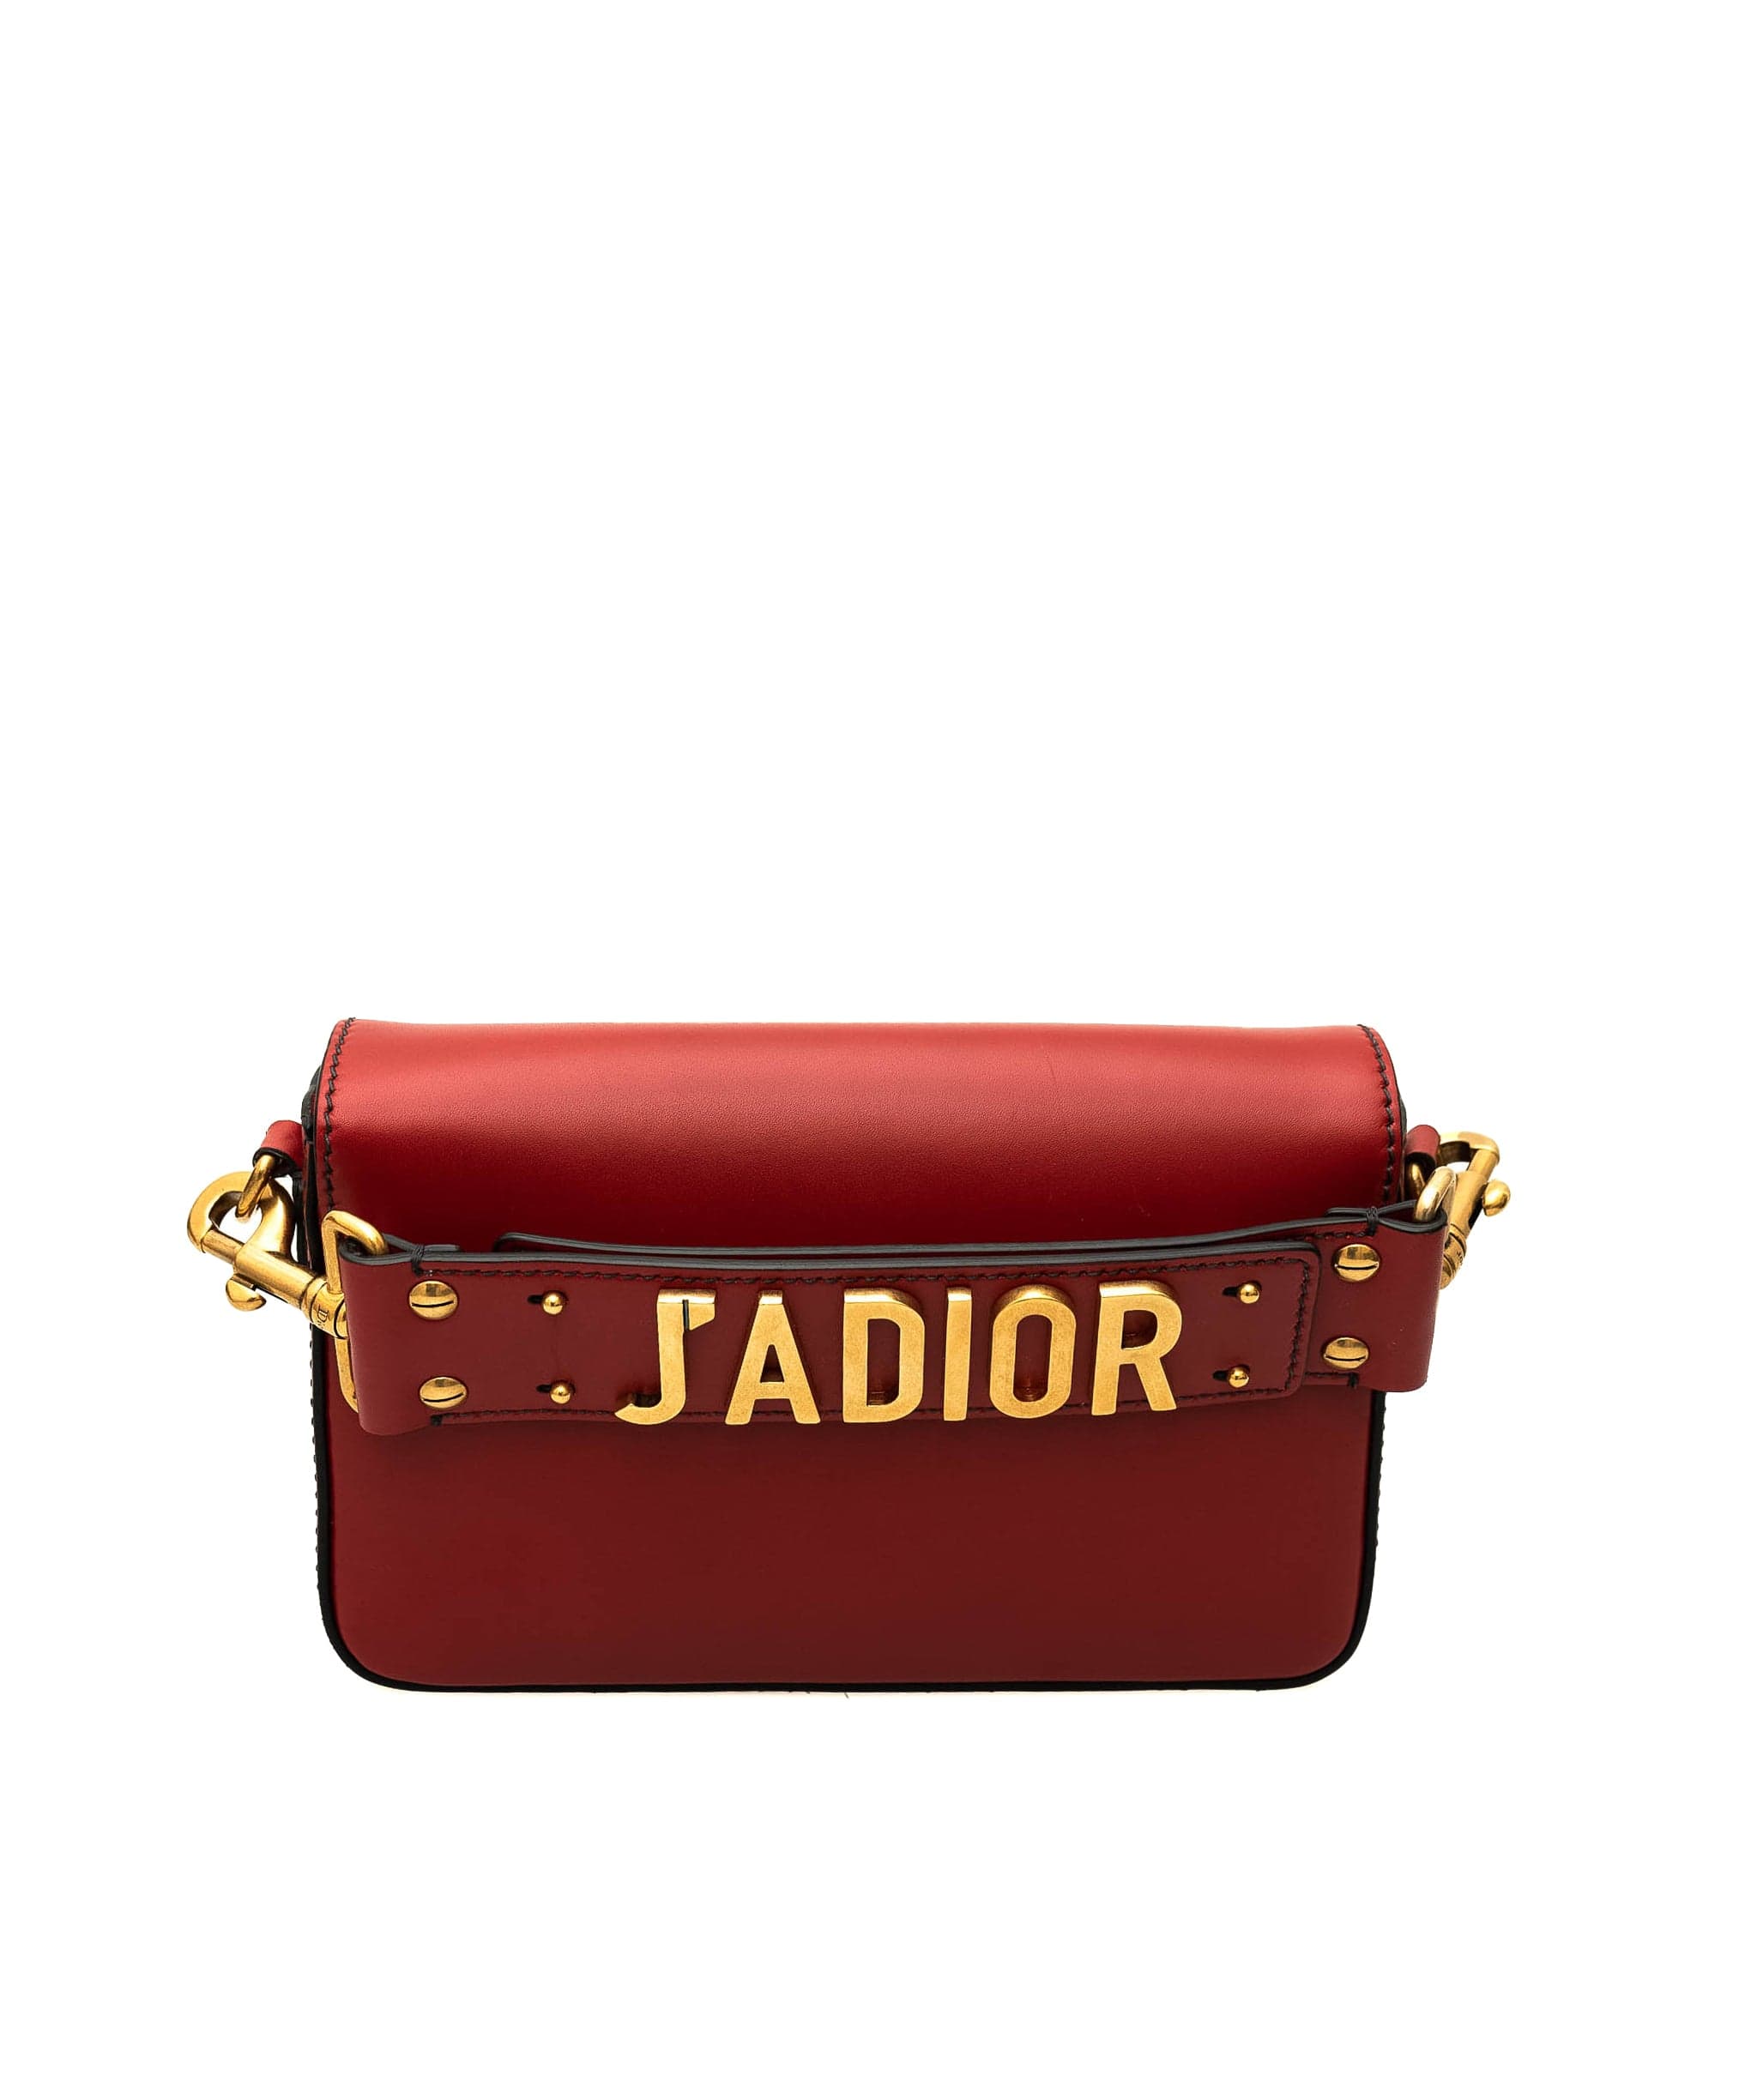 Christian Dior Christian Dior Red Leather J'Adior Bag GHW - AGL1560